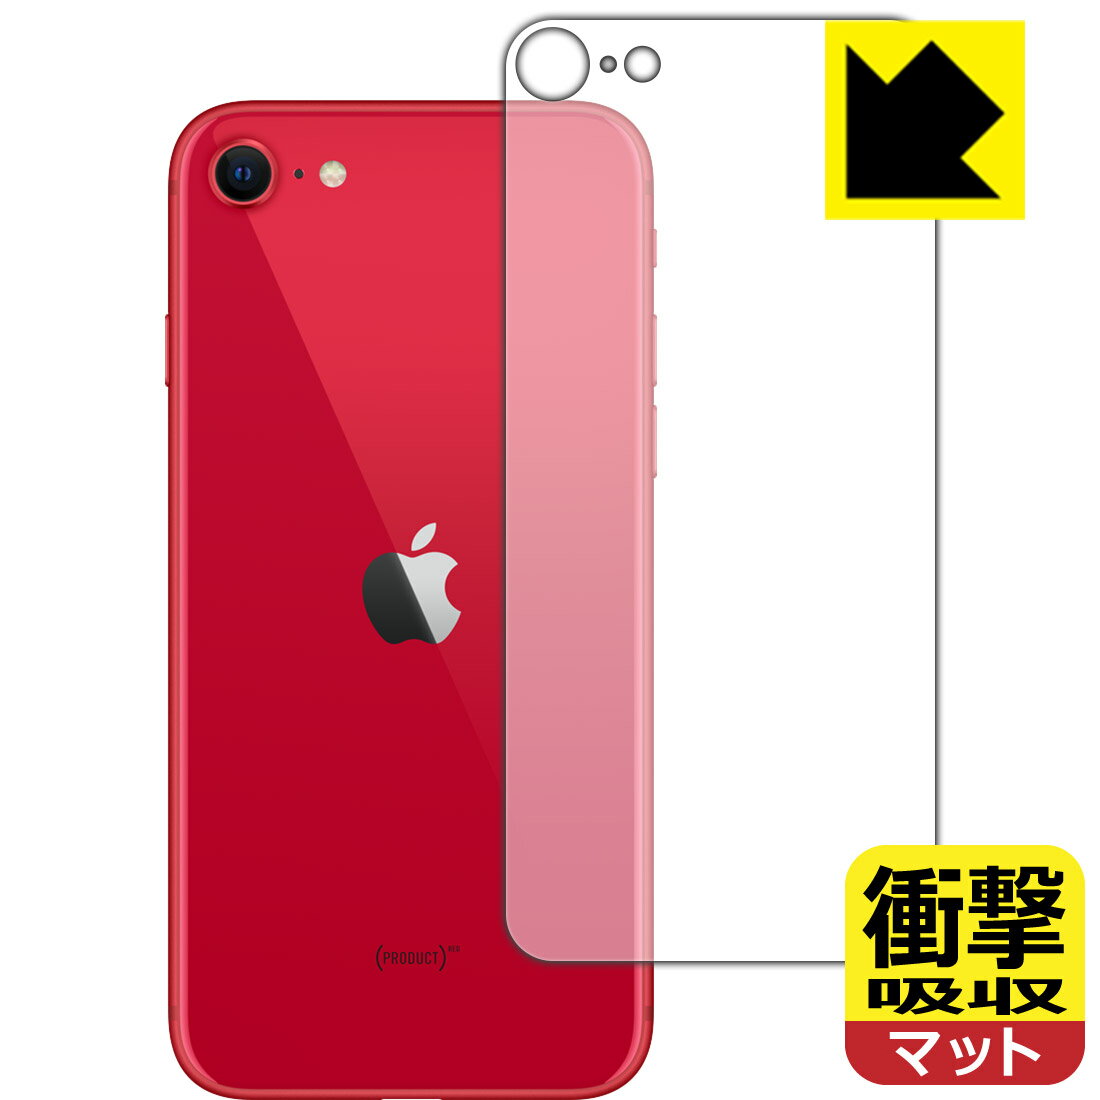 衝撃吸収【反射低減】保護フィルム iPhone SE (第2世代) 背面のみ 【O型】 日本製 自社製造直販